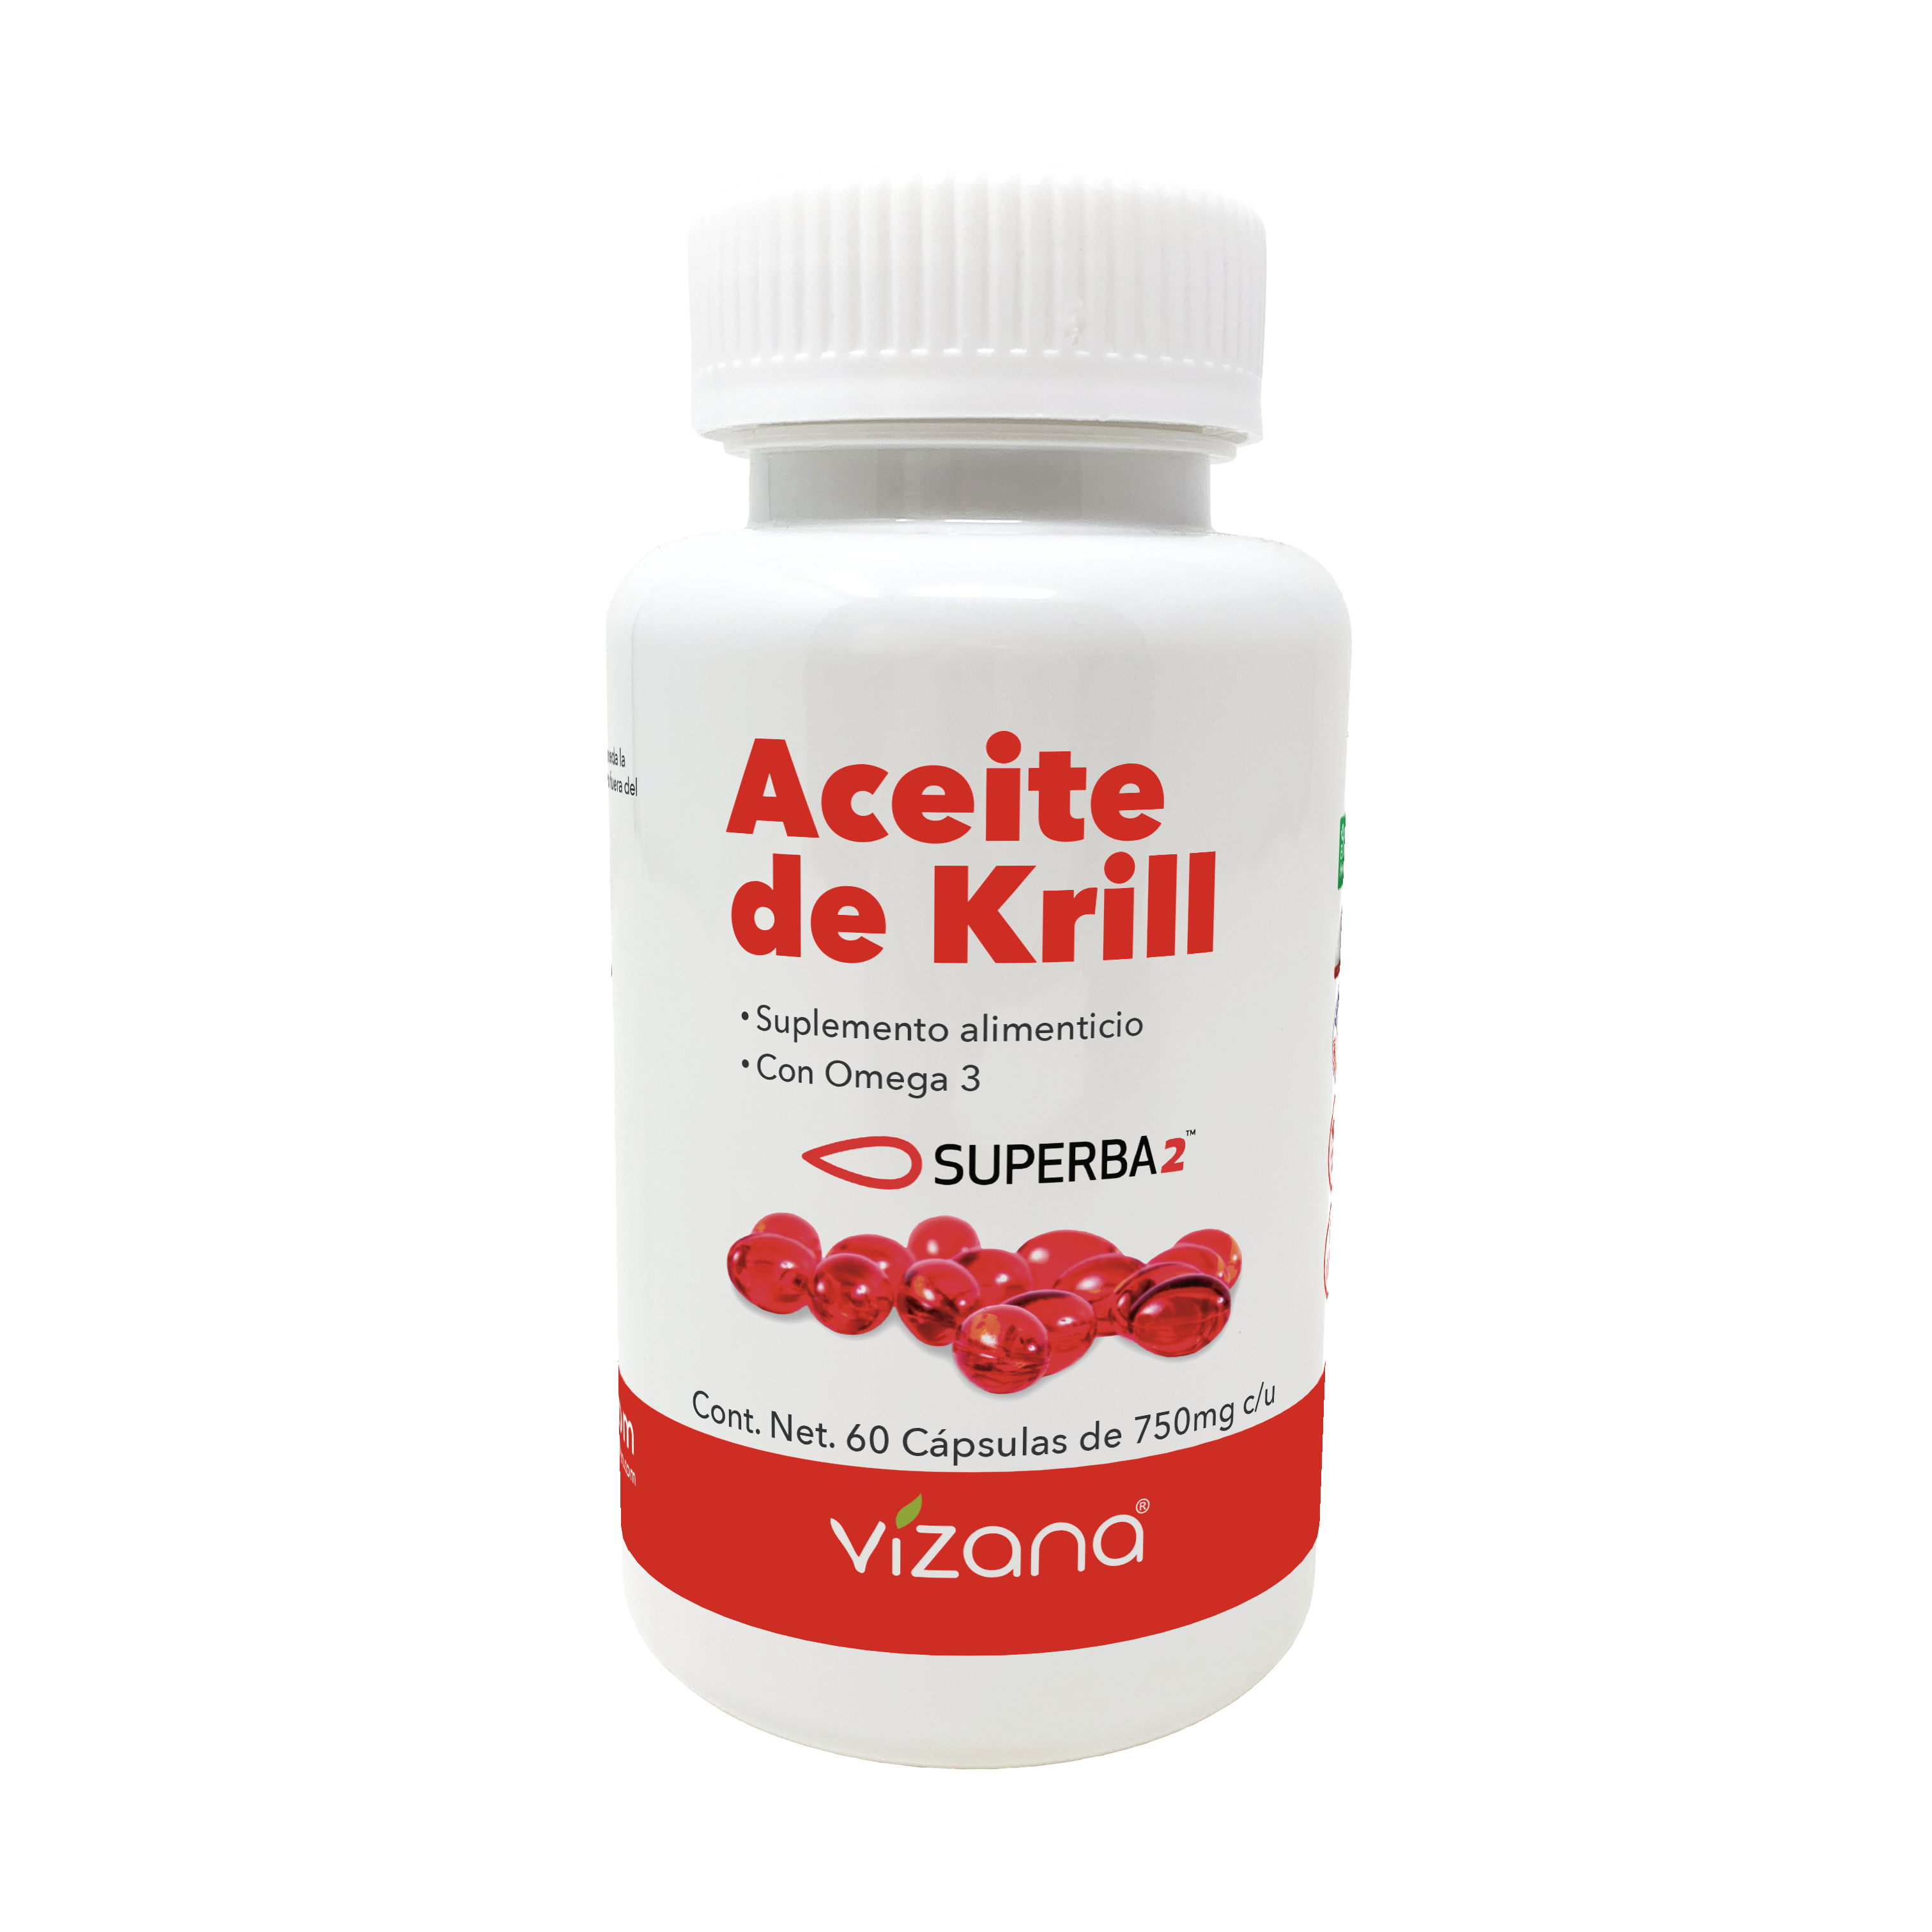 Aceite de Krill en capsulas – Vizana